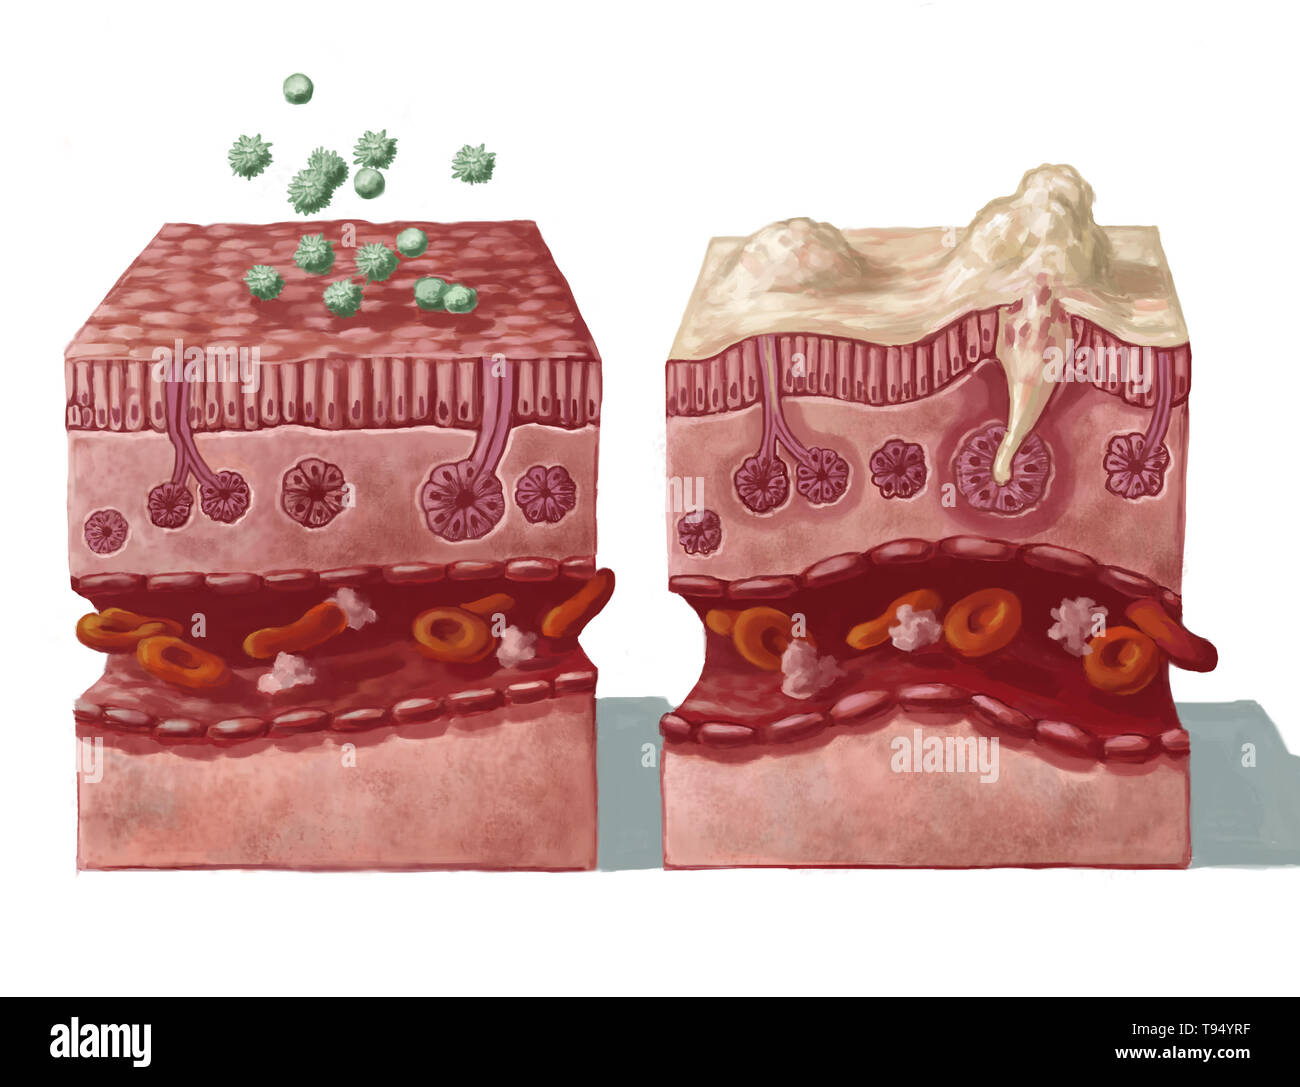 Illustrazione di una sana la mucosa nasale che entrano in contatto con gli allergeni (sulla sinistra) e la reazione che segue l'infezione (sulla destra): la sovrapproduzione di muco, distruzione della membrana mucosa epiteliale, la dilatazione dei vasi sanguigni e la reazione immunitaria in macrofagi e linfociti come risultato di infiammazione. Foto Stock